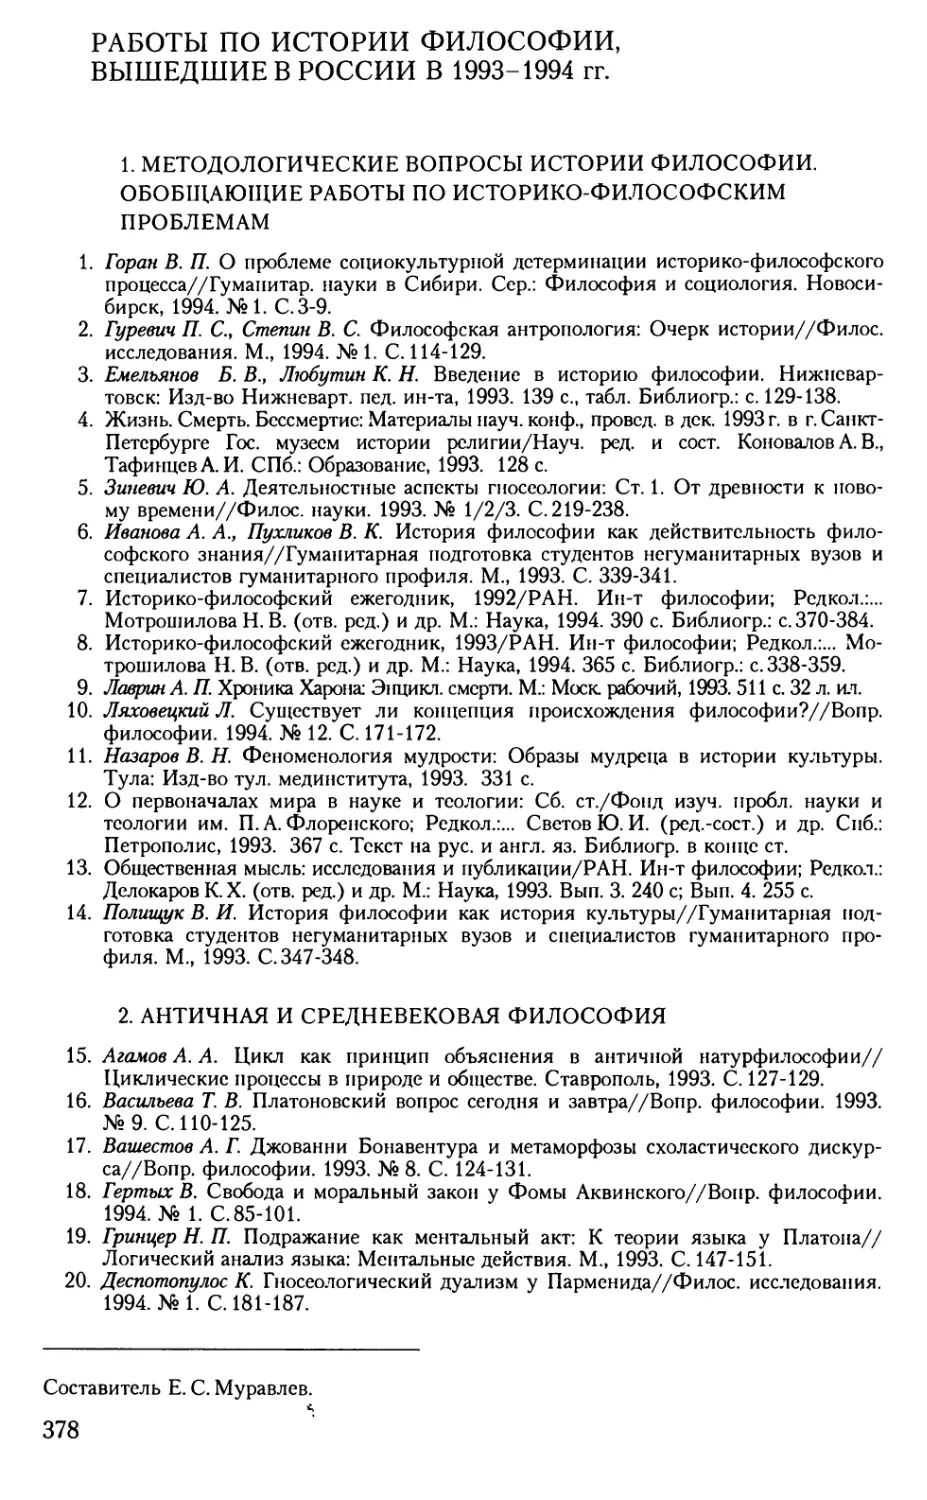 Работы по истории философии, вышедшие в России в 1993-1994 гг.